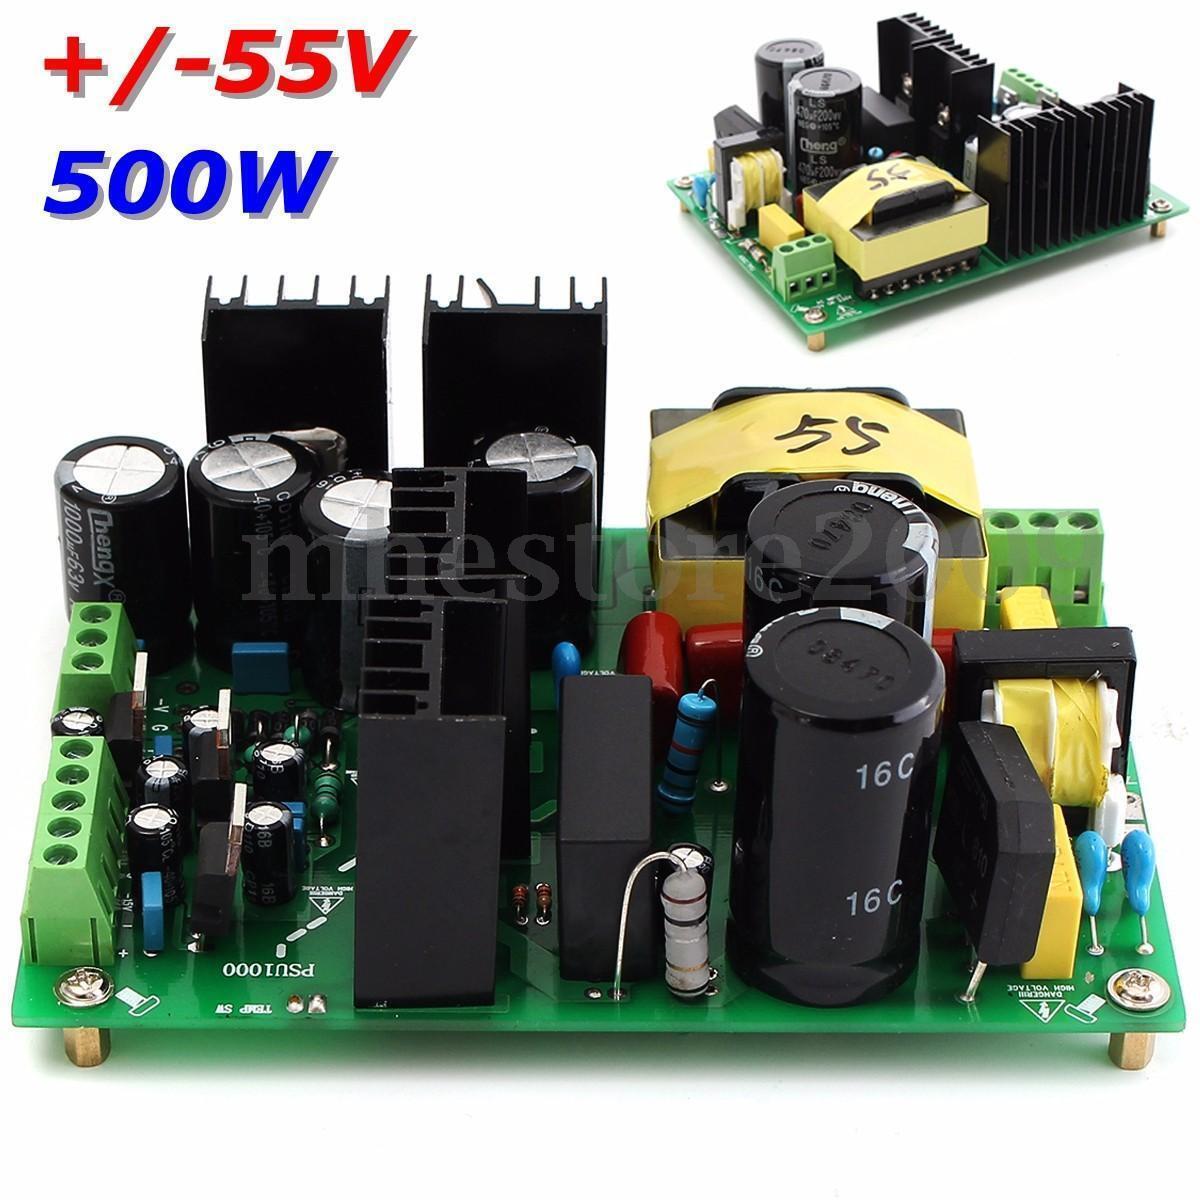 500W amplifier switching power supply board dual-voltage PSU +/-55V 50v 60v 65v